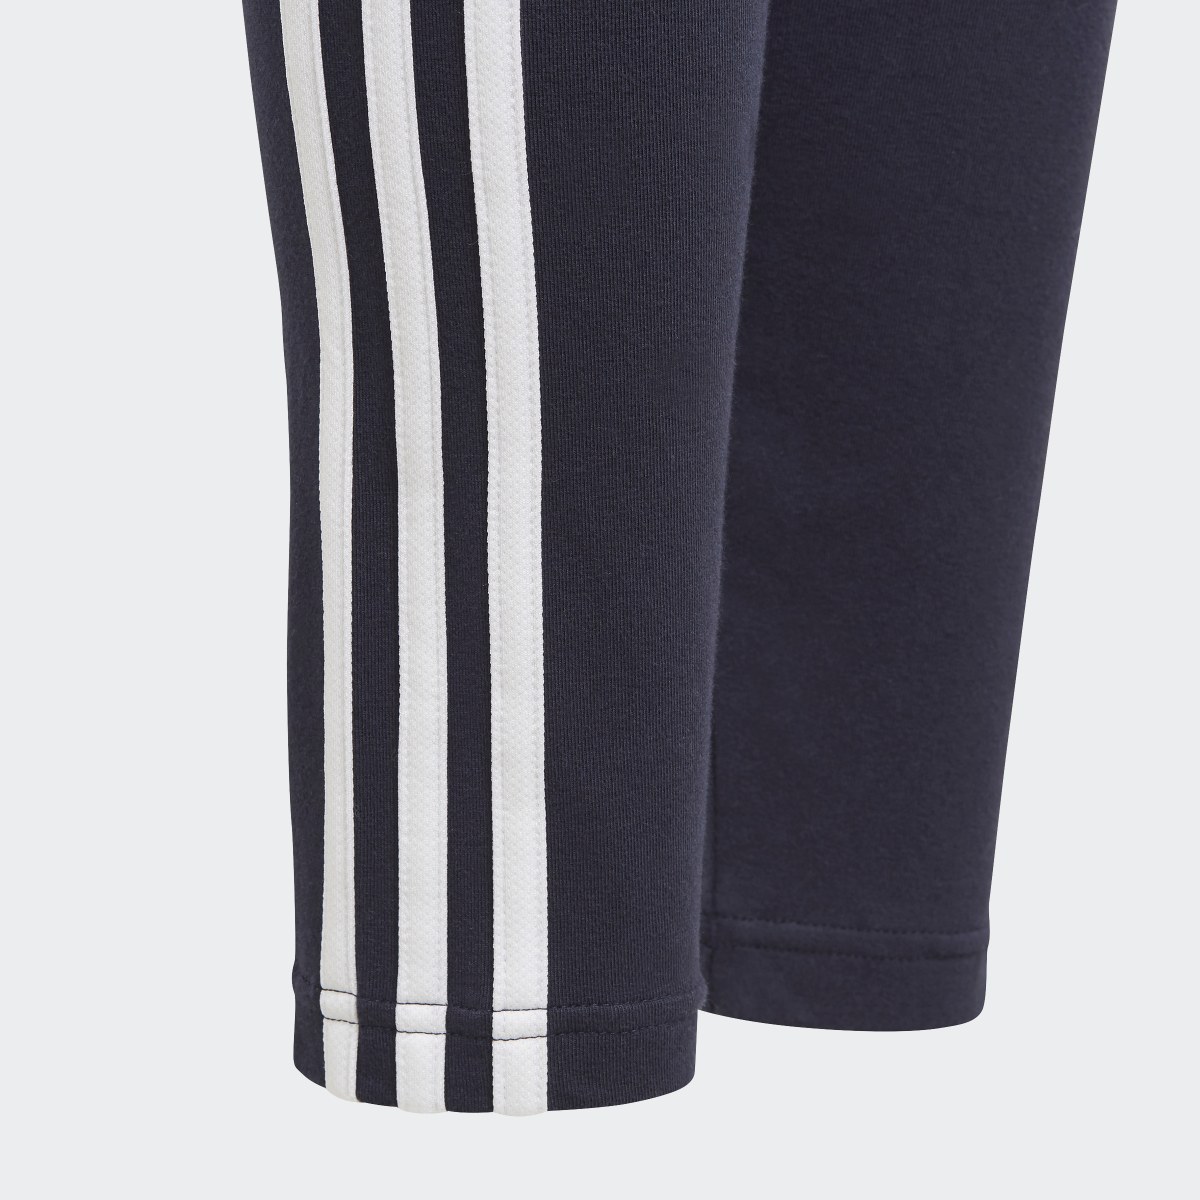 Adidas Essentials 3-Stripes Leggings. 5